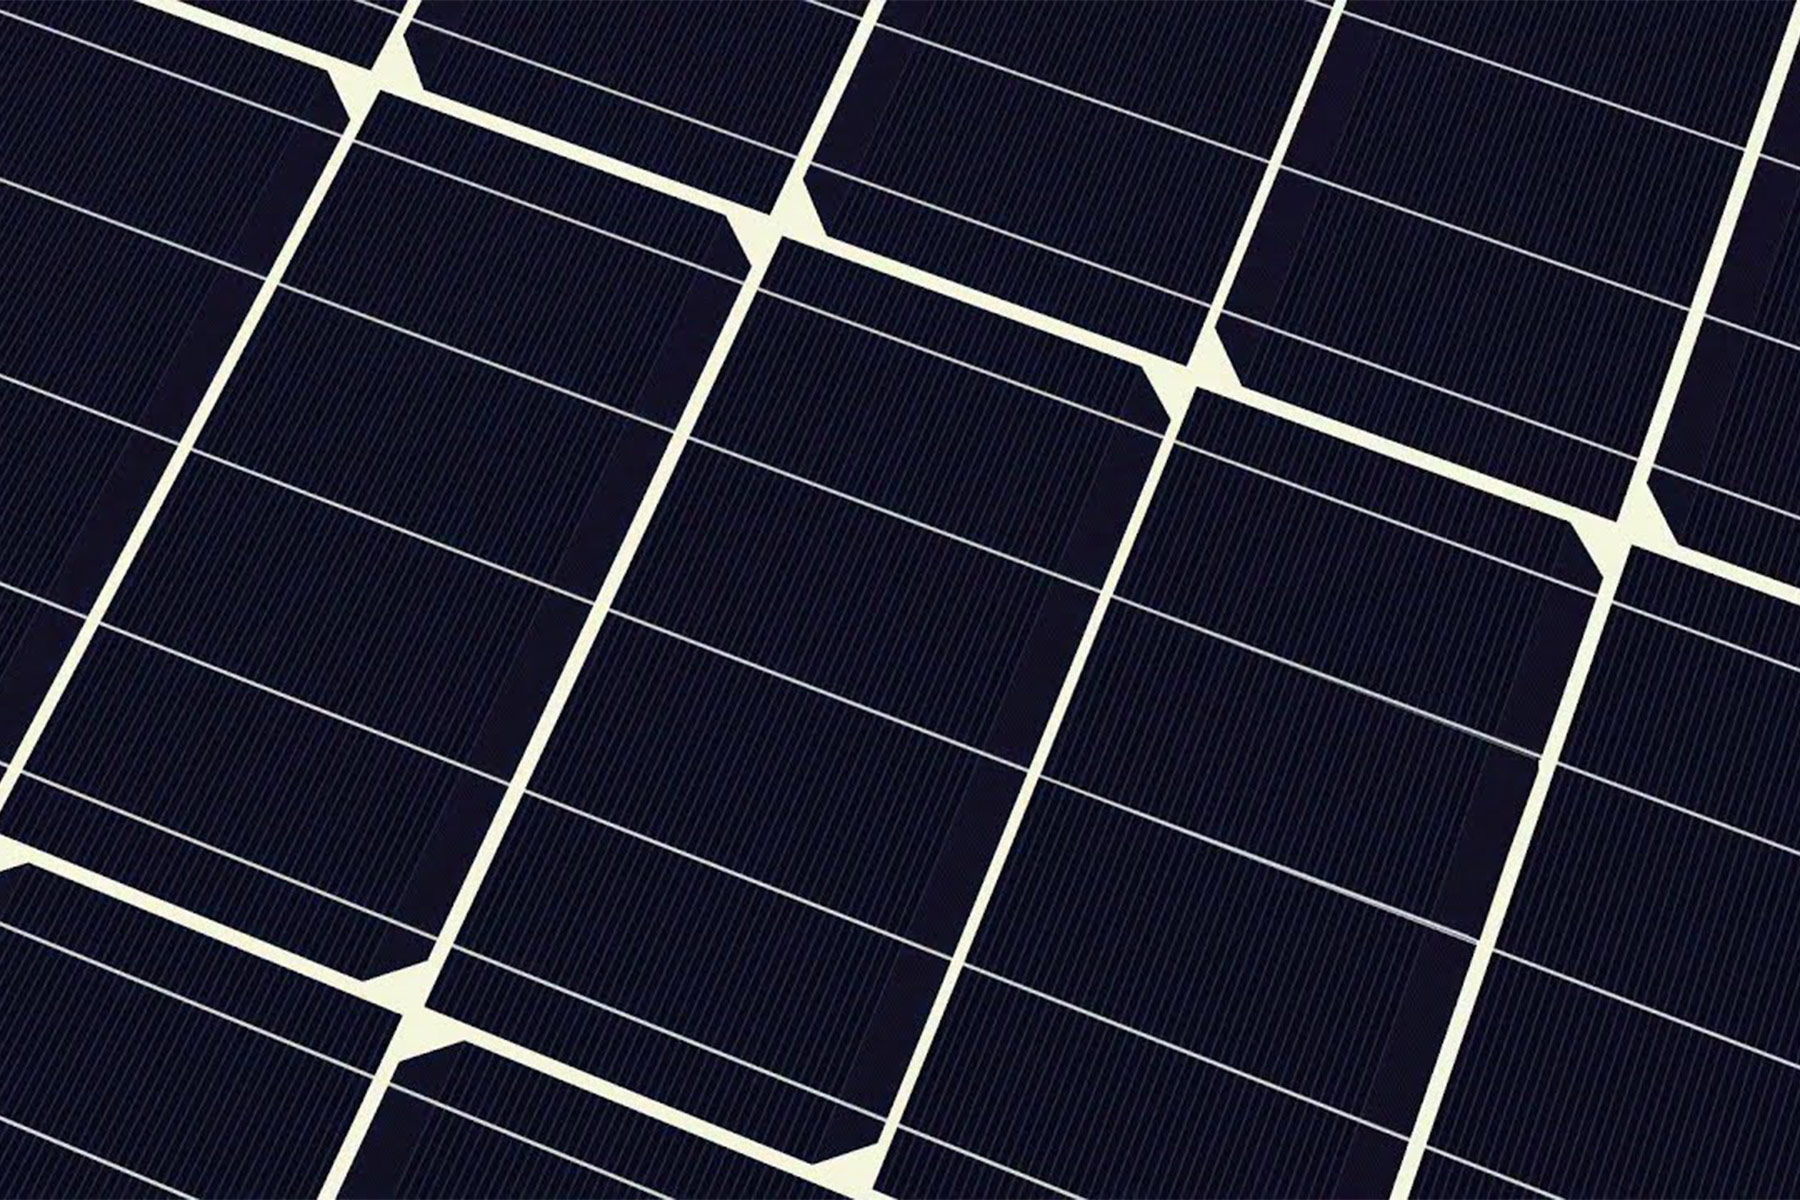 Närbild som visar del av en solcellspanel baserad på half cell-teknik